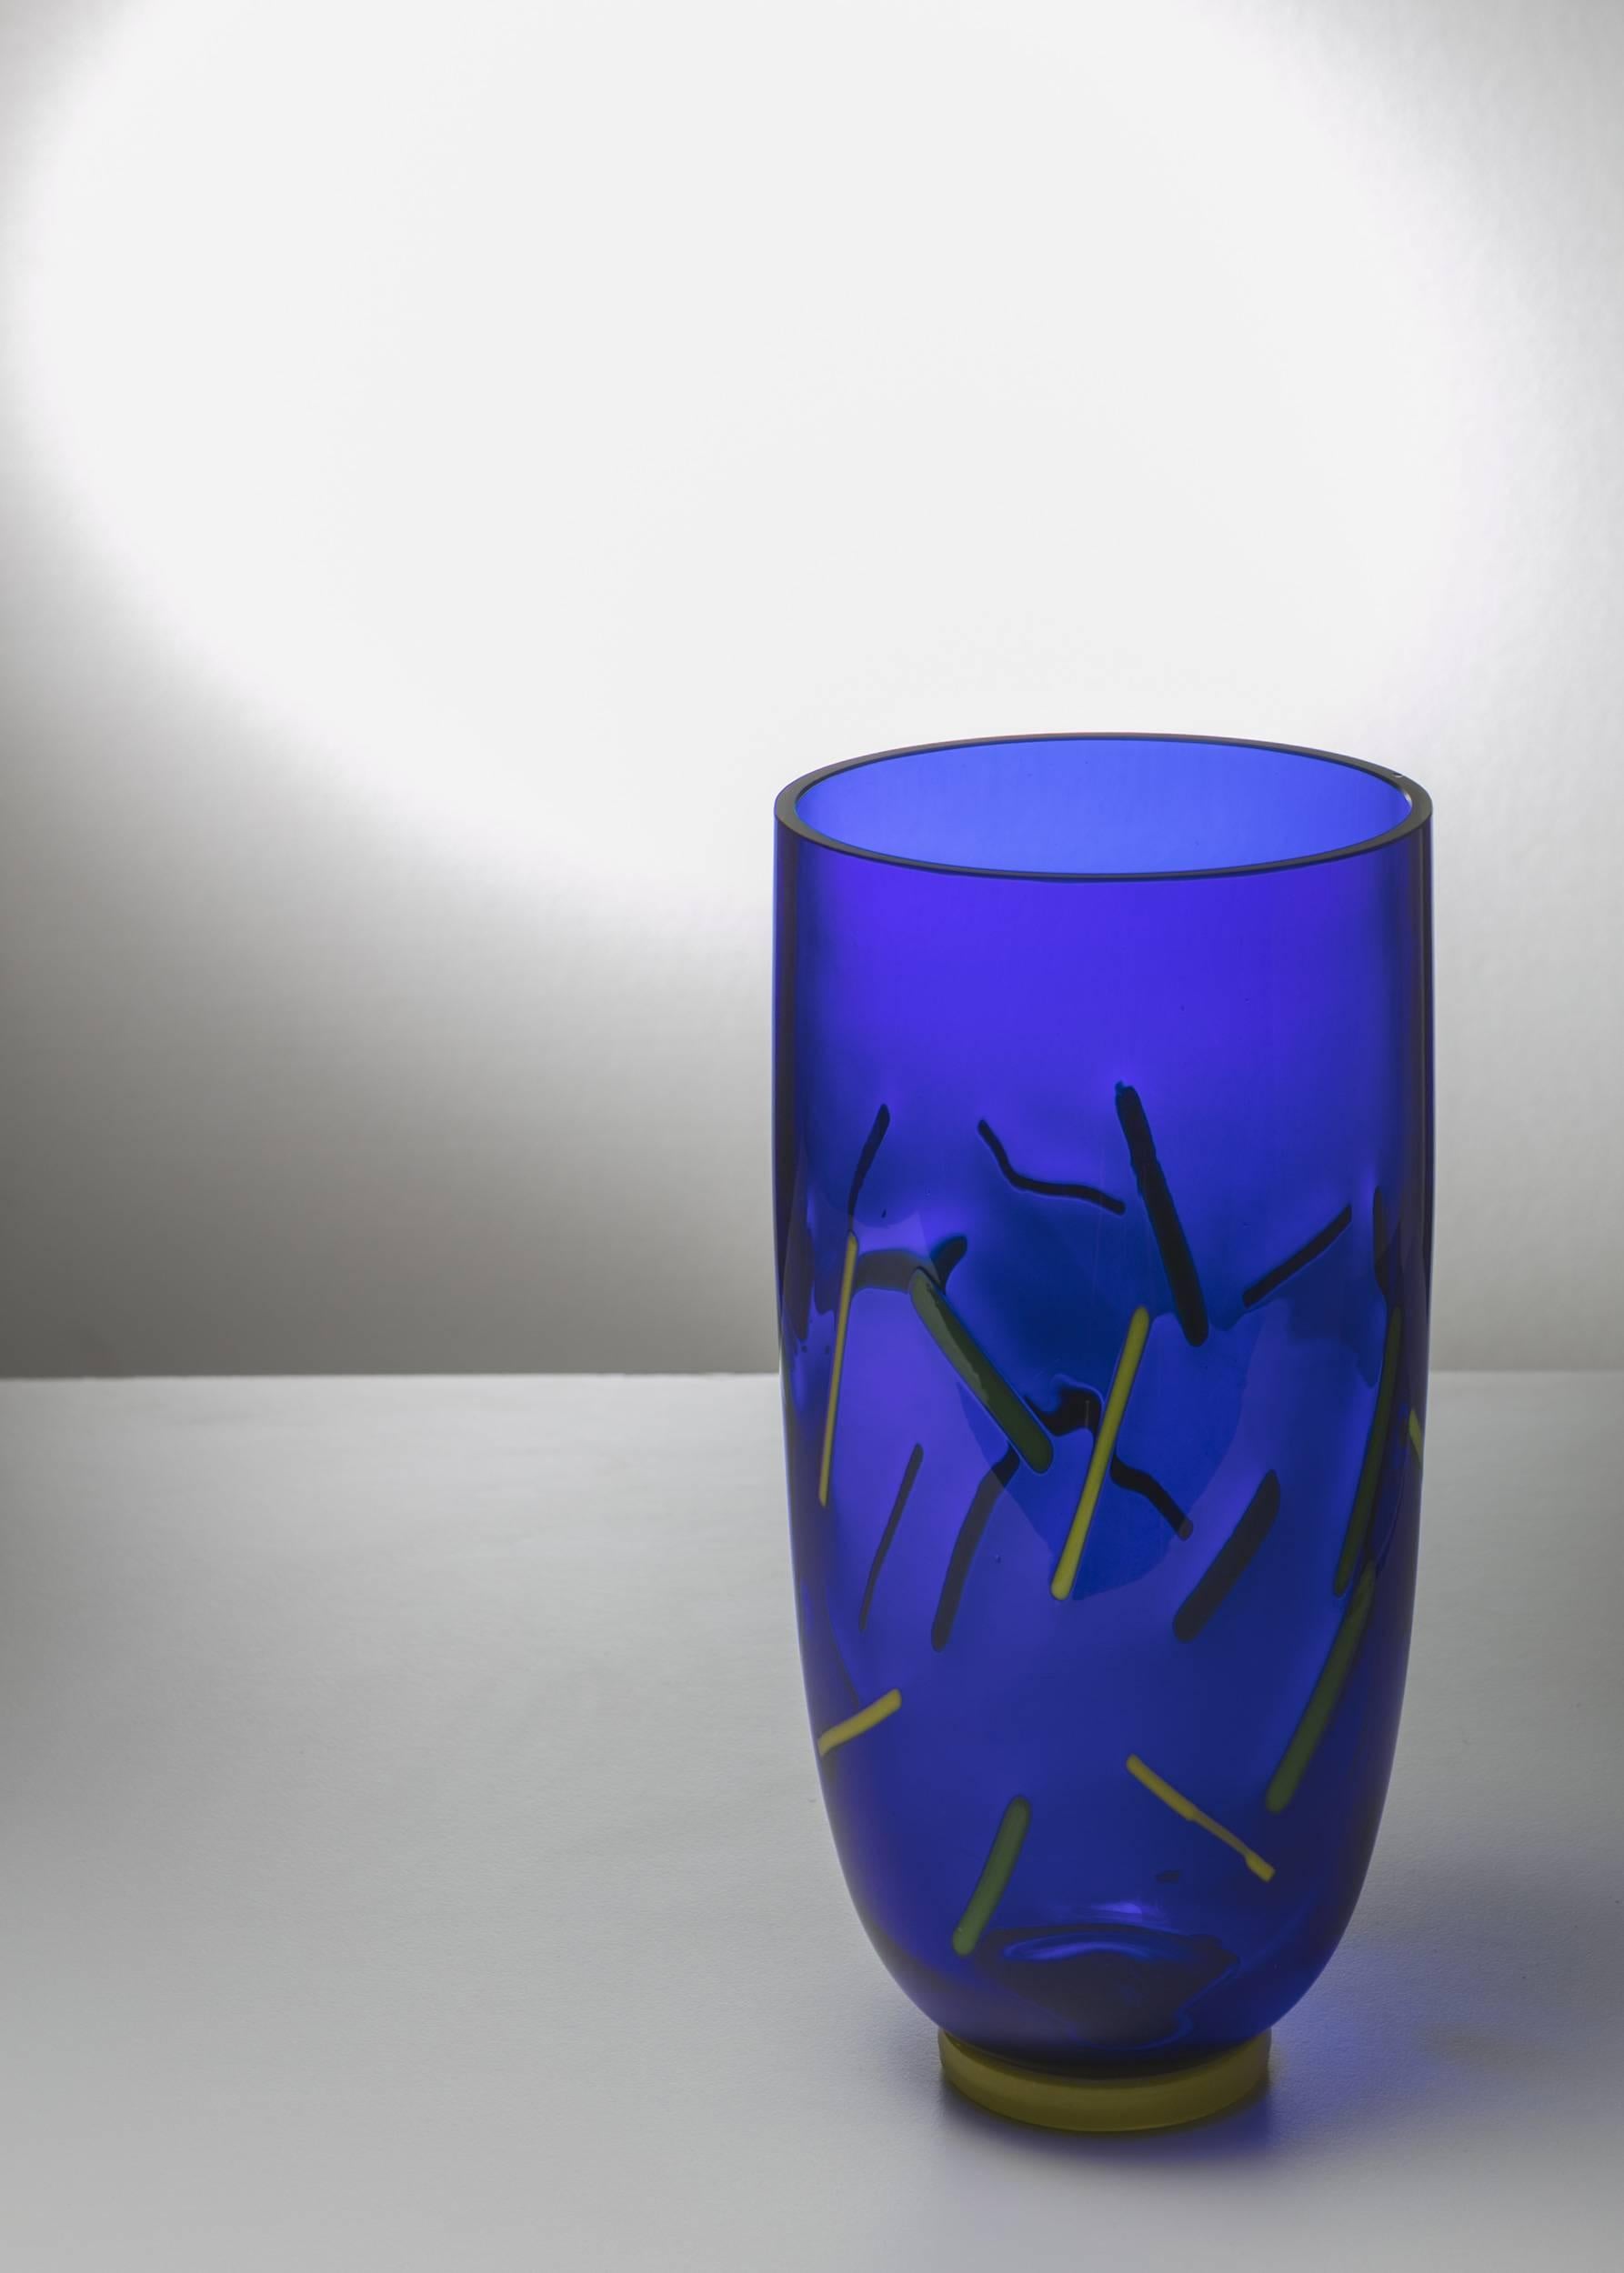 Remarquable vase en verre de Murano par Barovier&Toso.
Corps bleu avec inclusions jaunes et vertes.